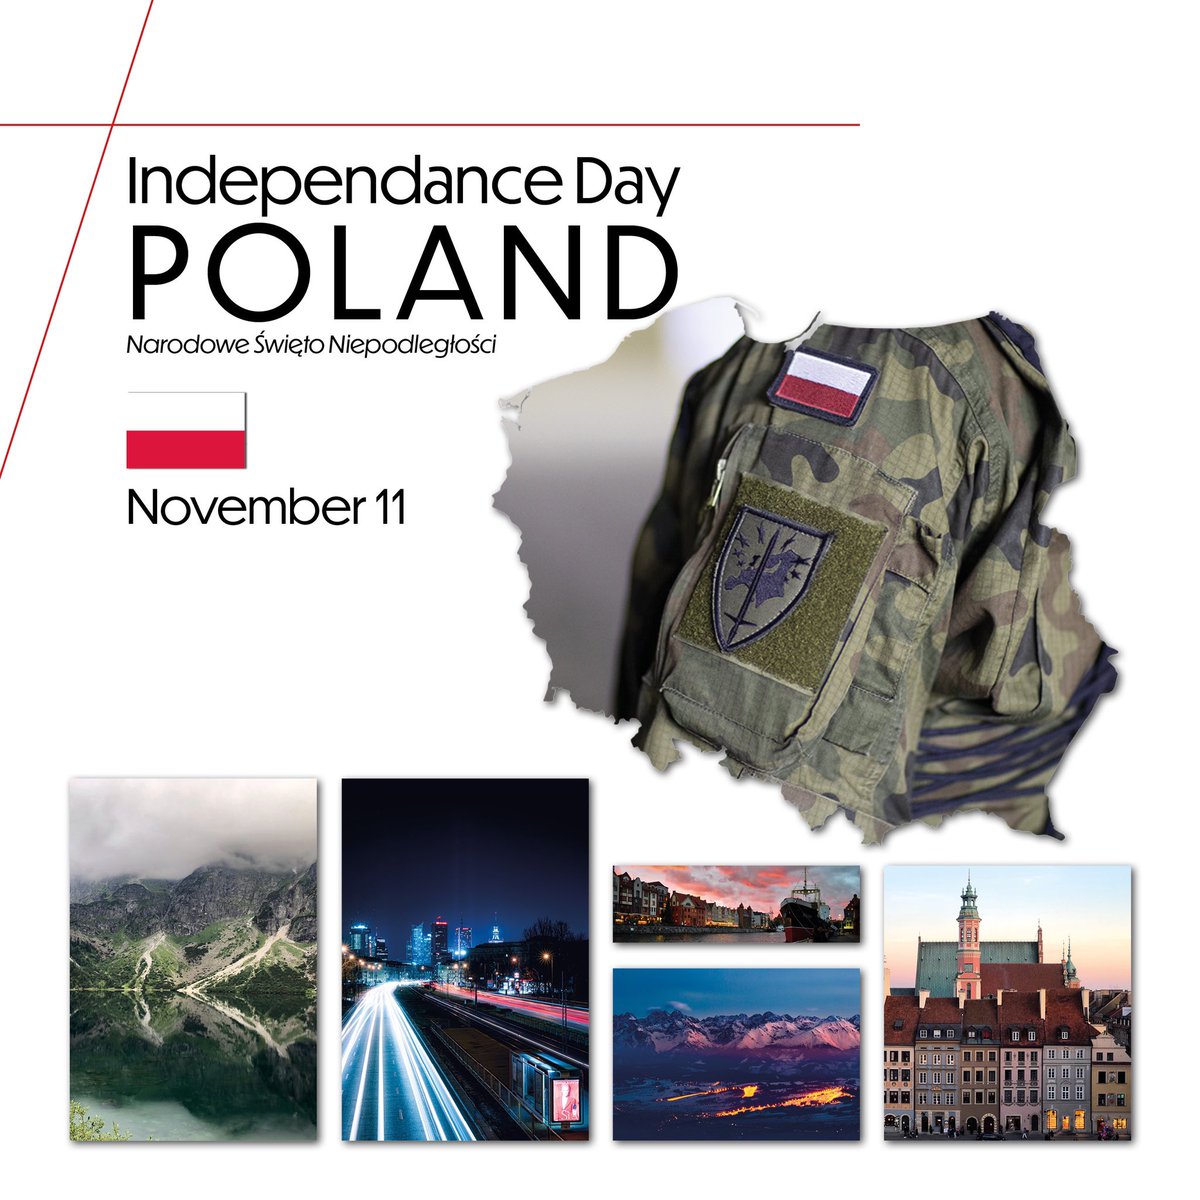 🇵🇱 Happy #IndependenceDay2021 to Poland! 🇵🇱

#11Listopada
#DzieńNiepodległości
#NarodoweŚwiętoNiepodległości